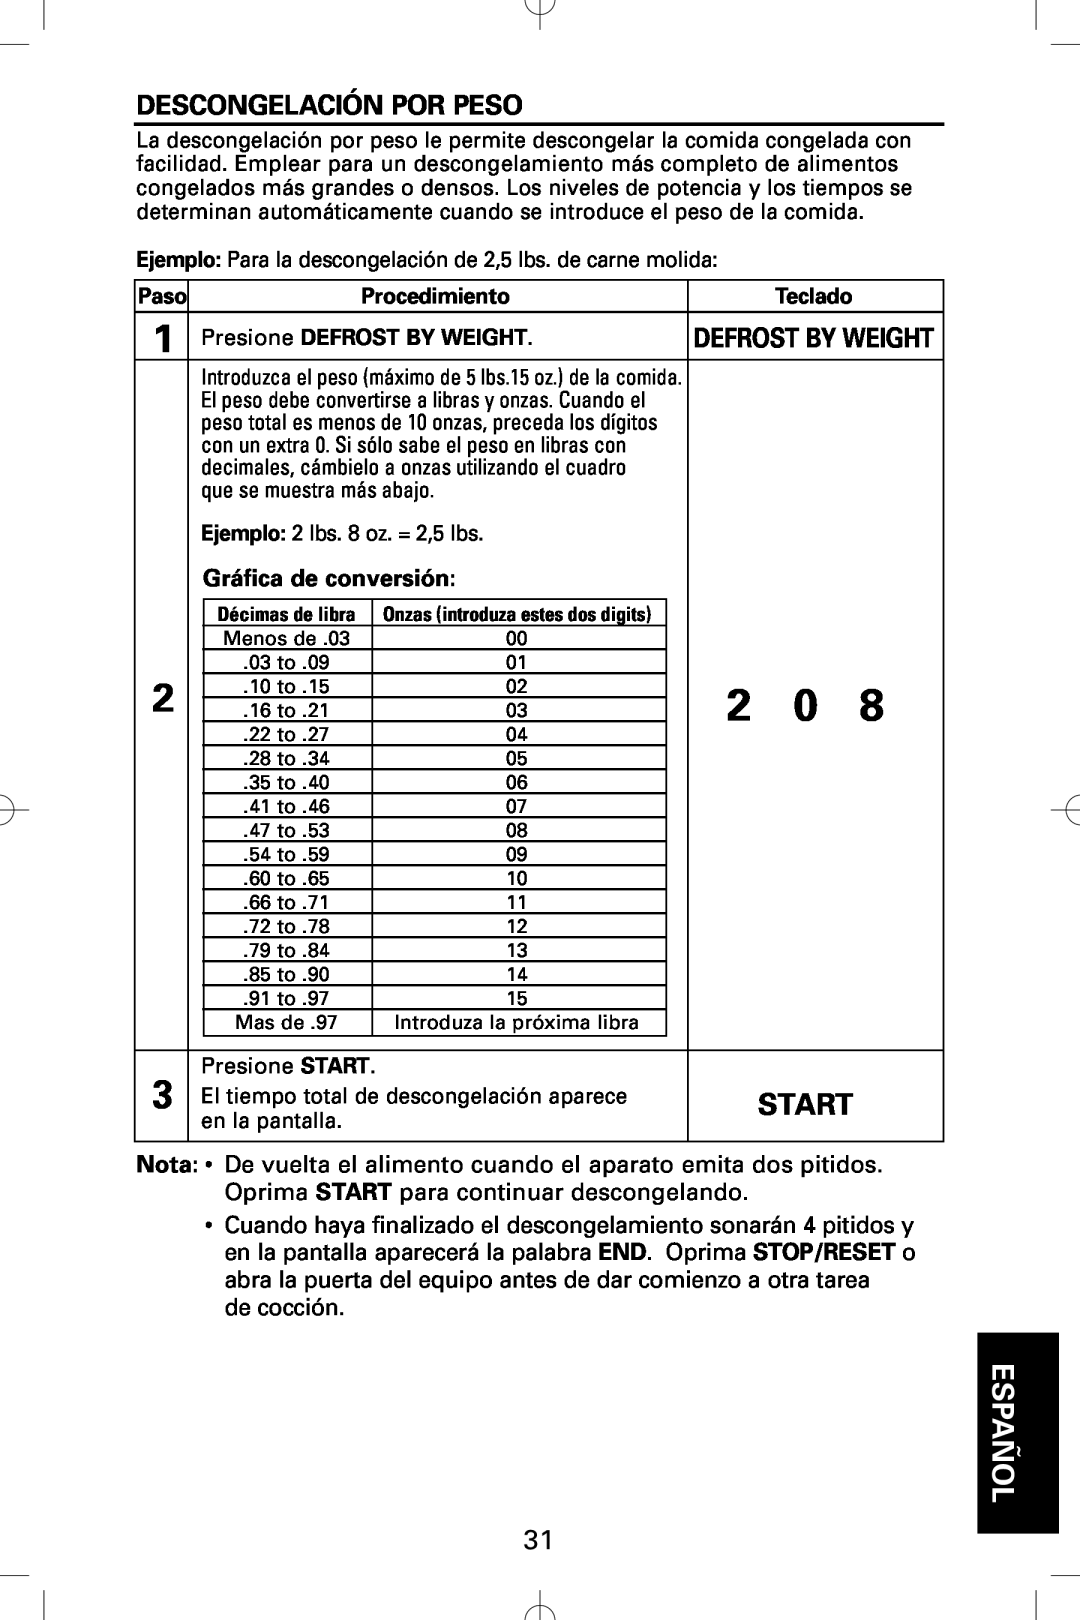 Sanyo EM-S5002W instruction manual Descongelación Por Peso, Gráfica de conversión, Start, Español 